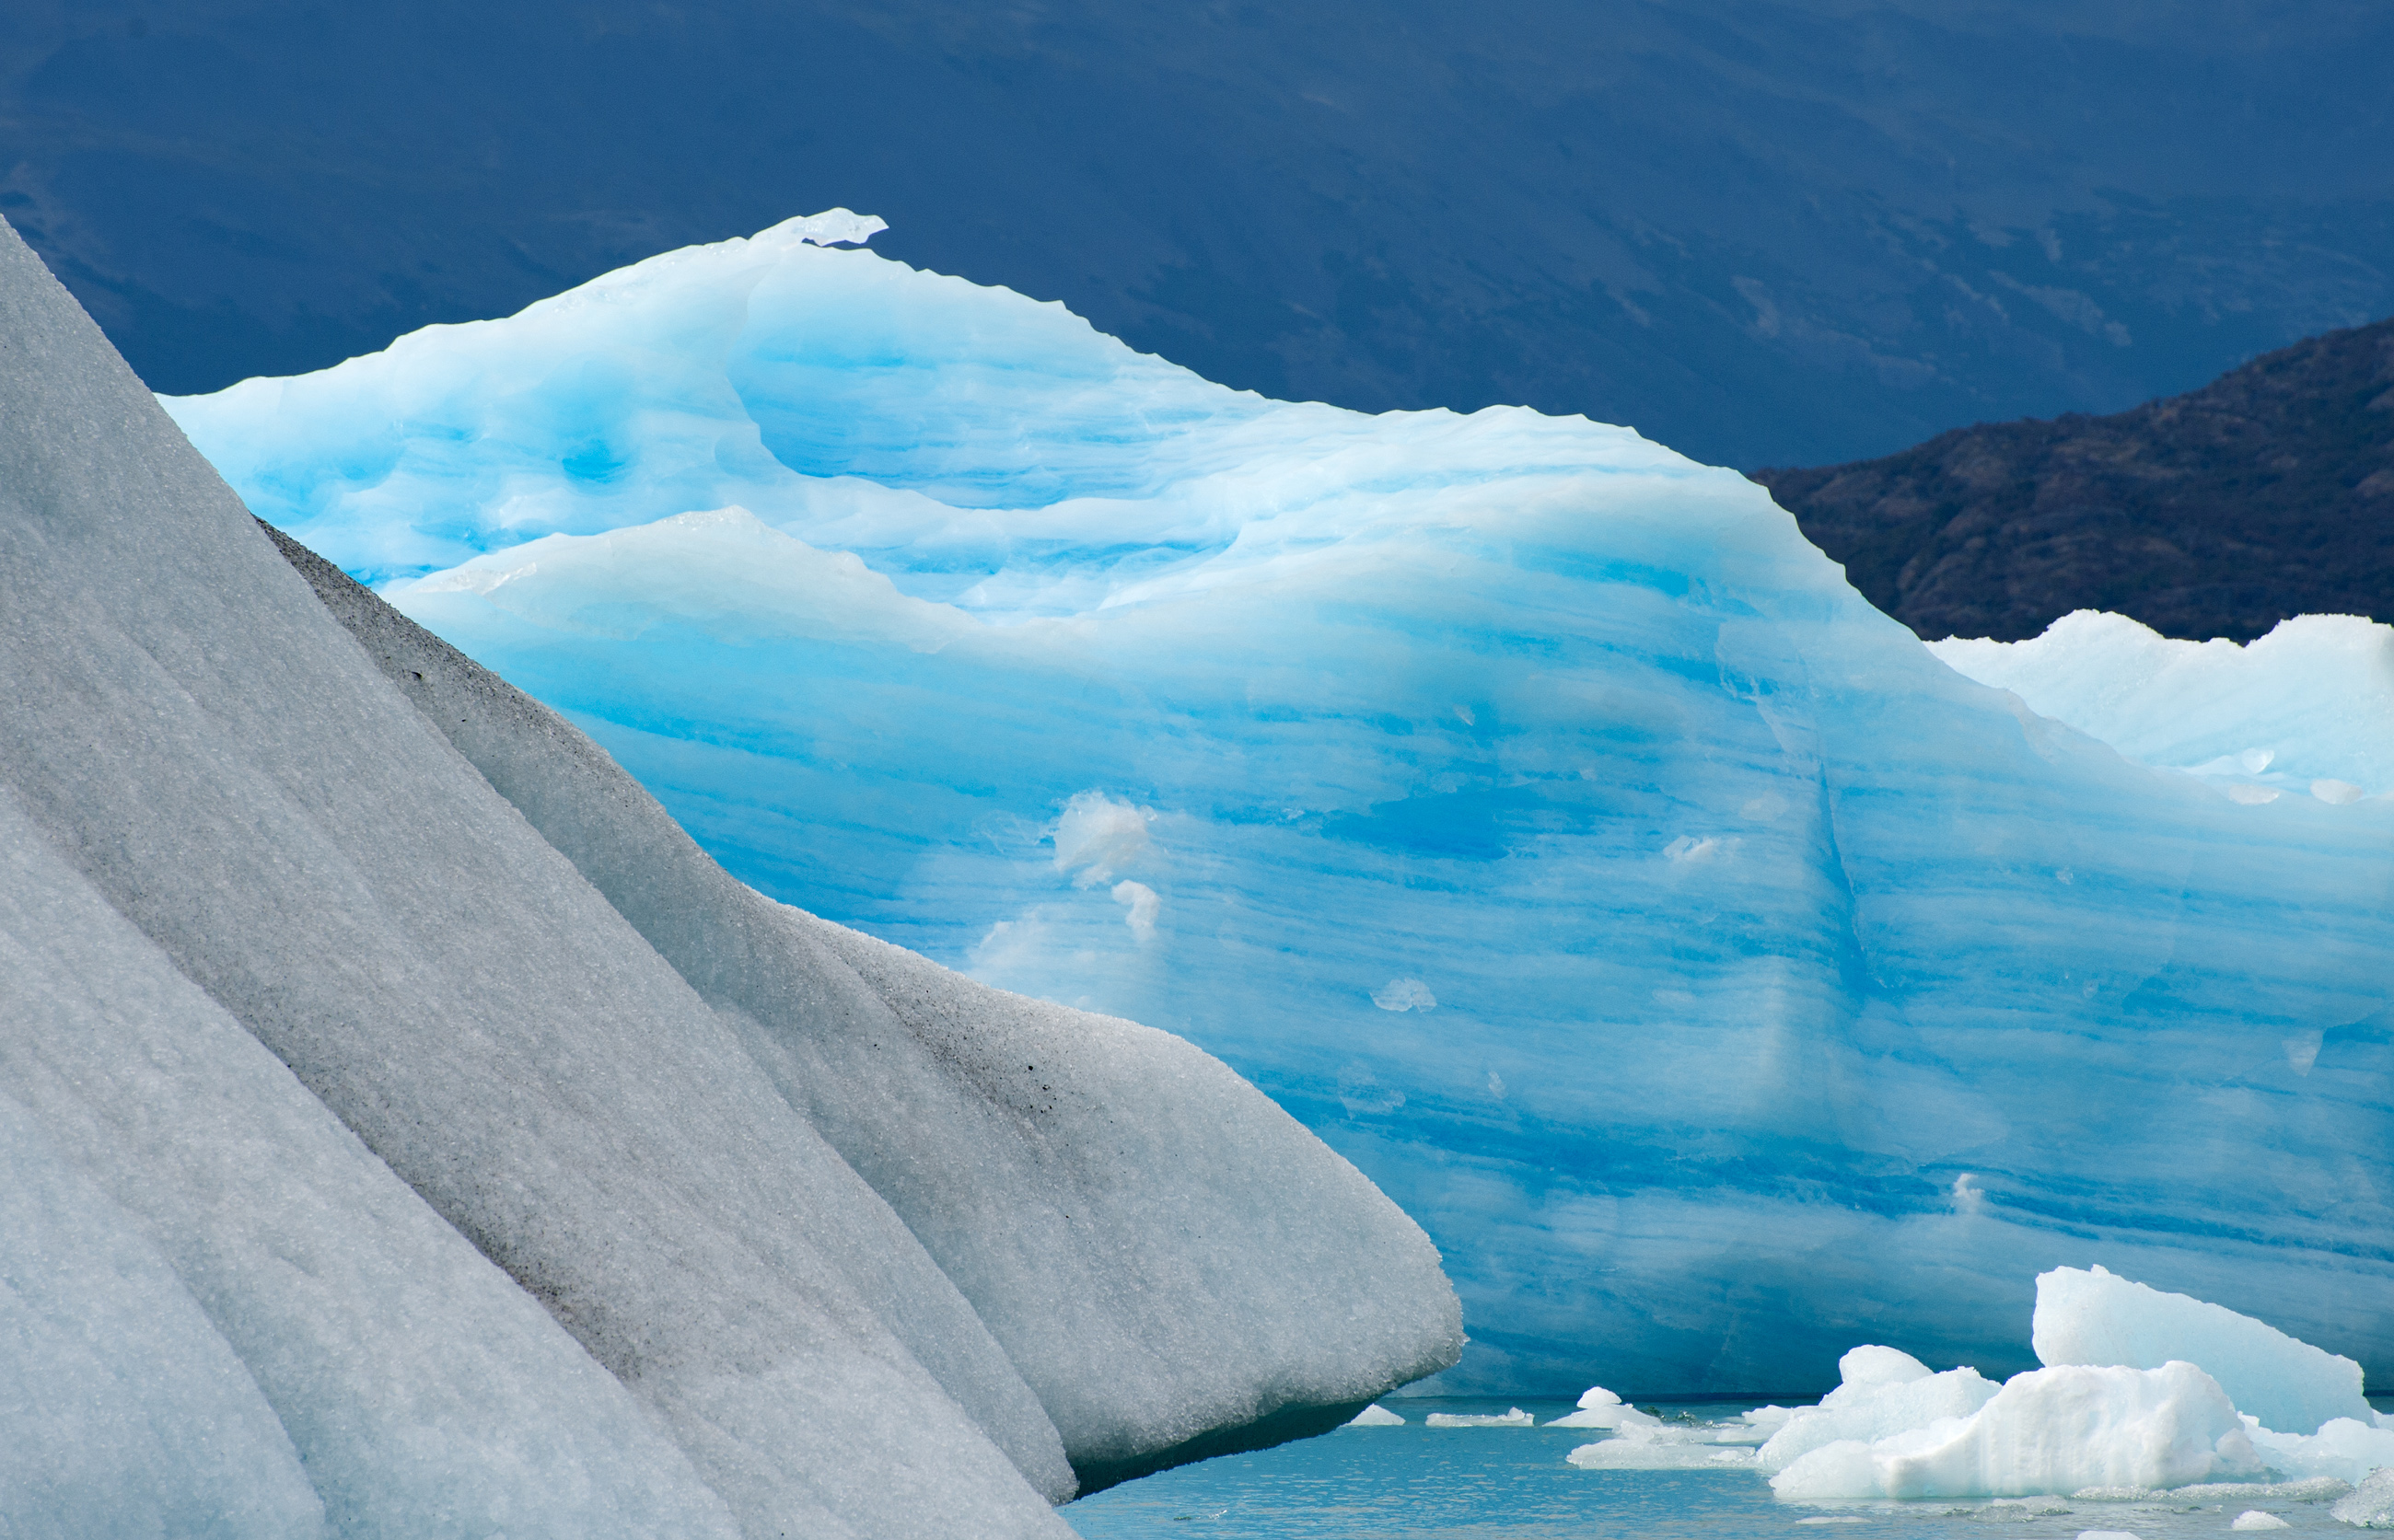 Tempanos (Iceberg) 2...